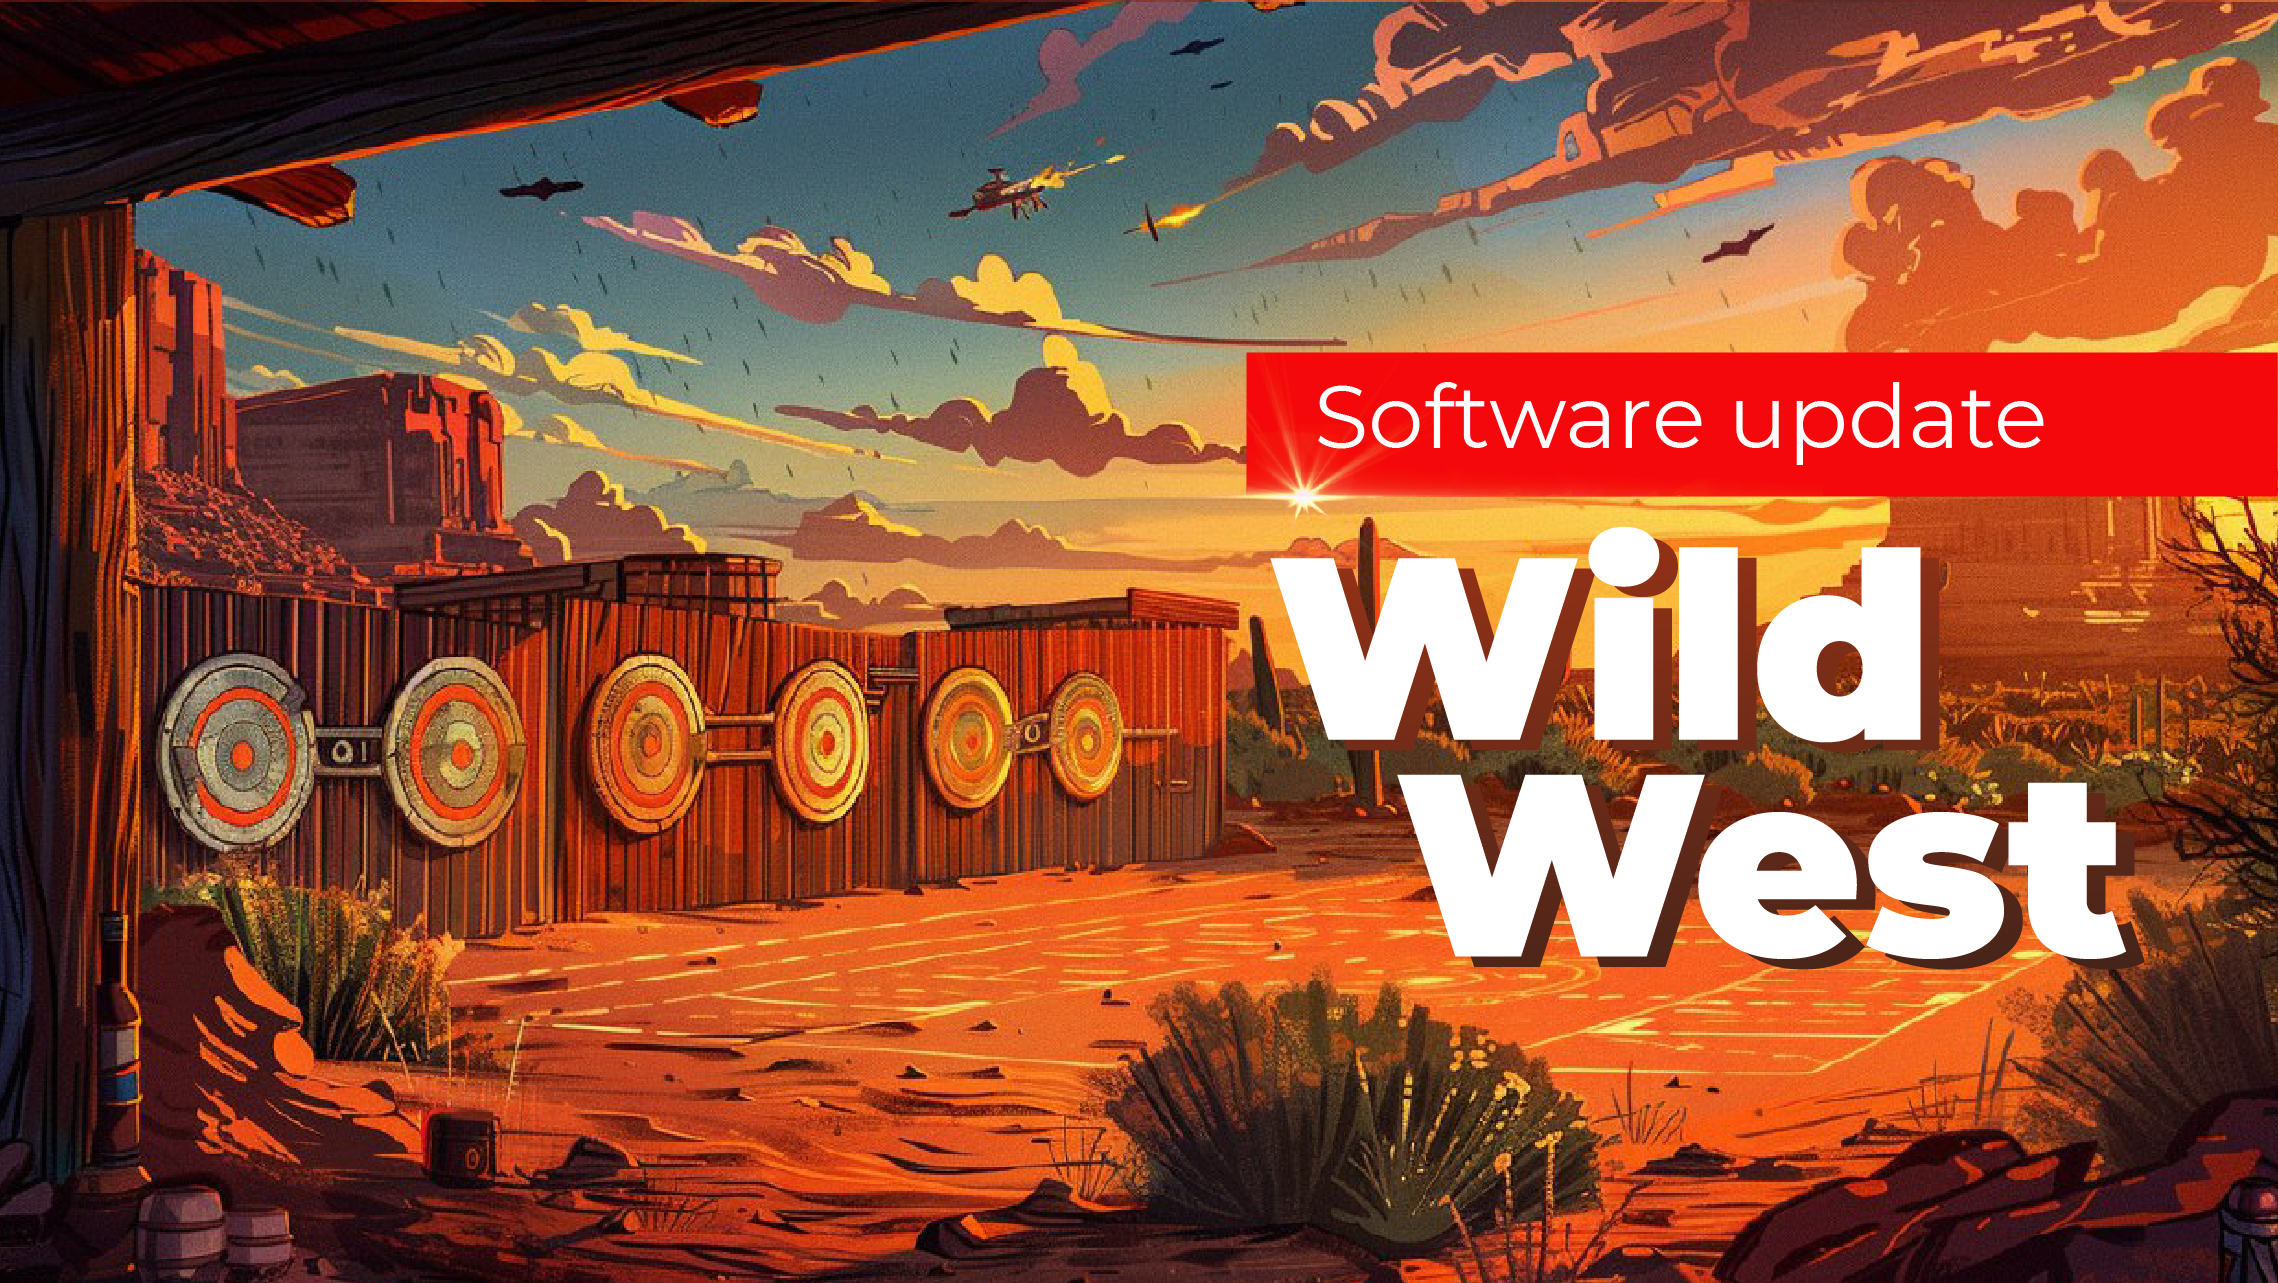 Wild West update: new feature